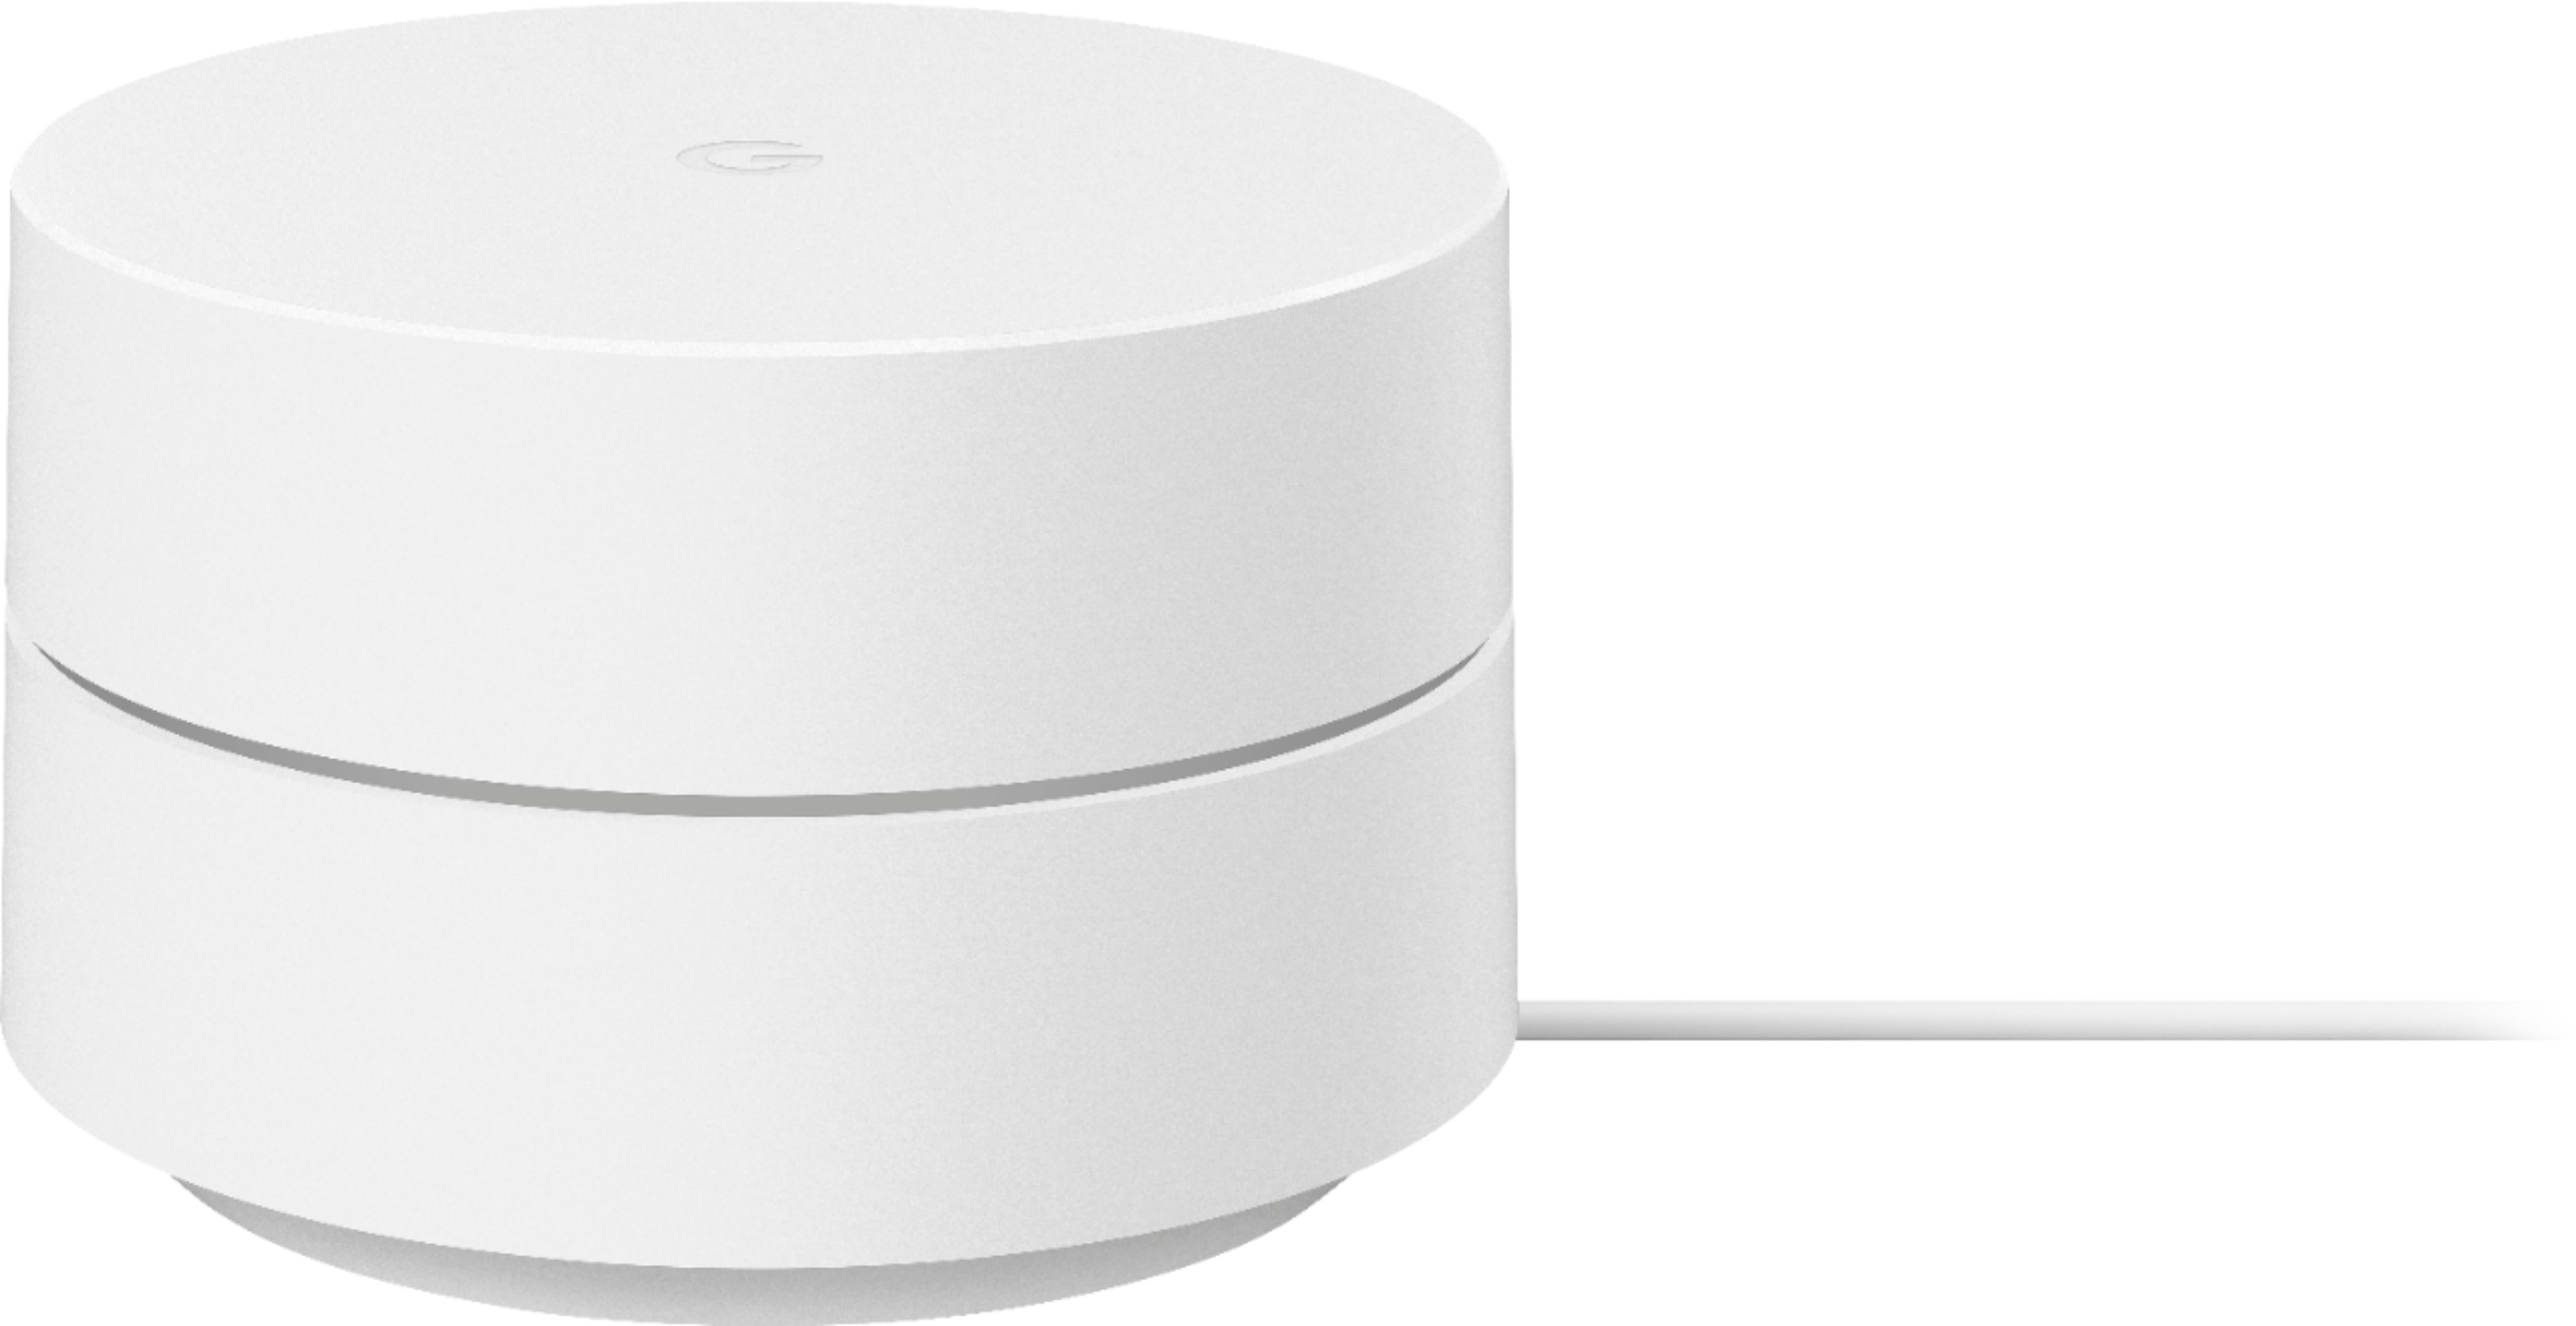 kighul spredning tromme Google Wifi Mesh Router (AC1200) 1 pack White GA02430-US - Best Buy